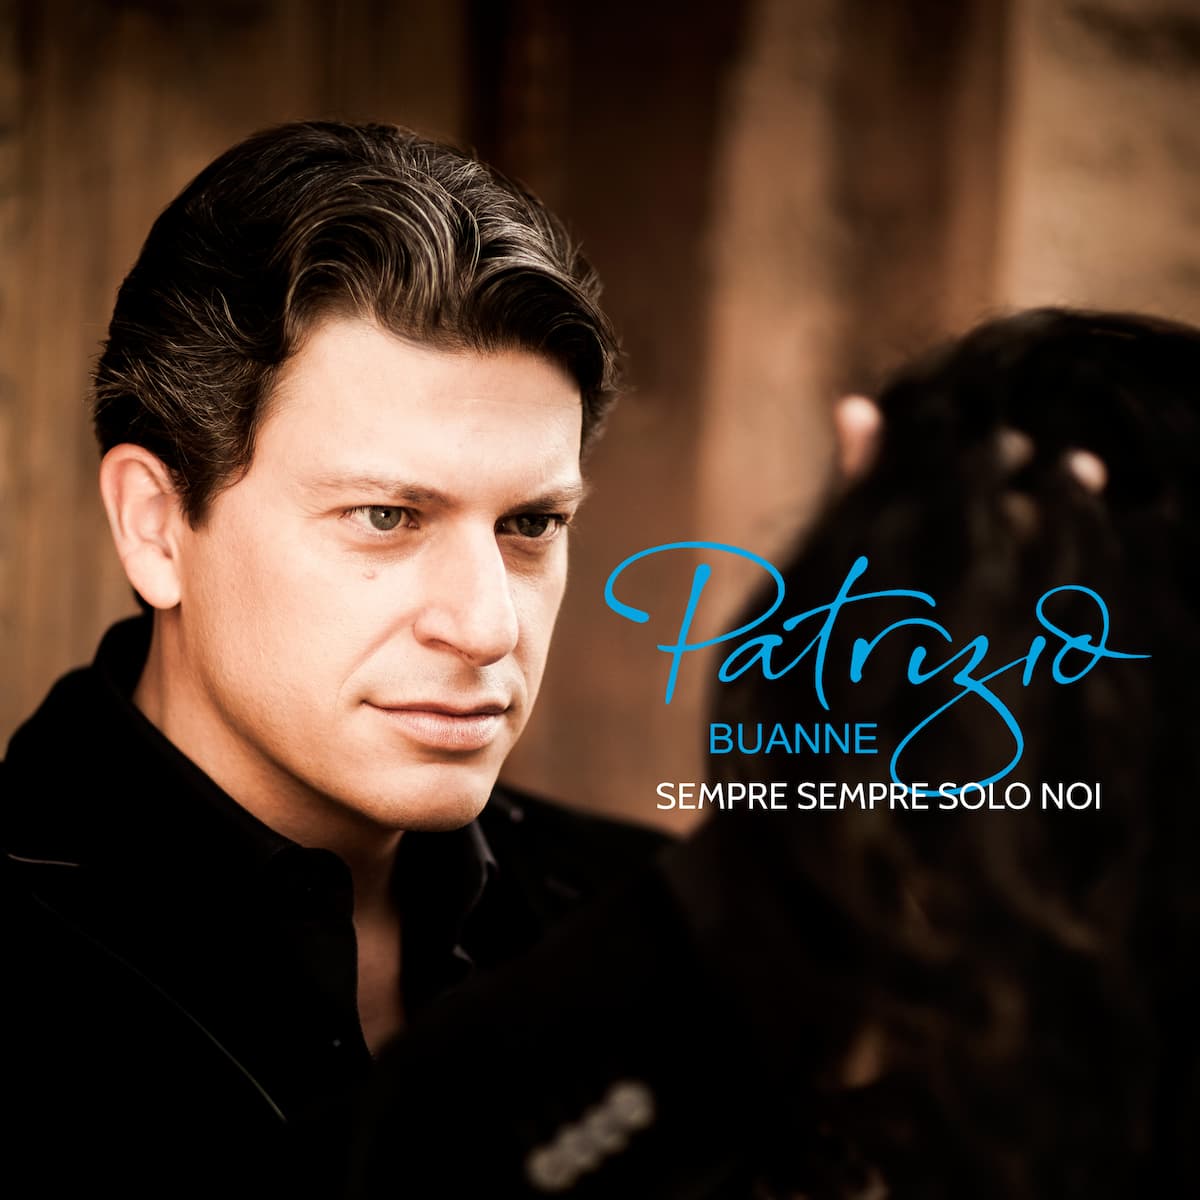 Patrizio Buanne “Sempre Sempre Solo Noi” - im Bild das Single-Cover